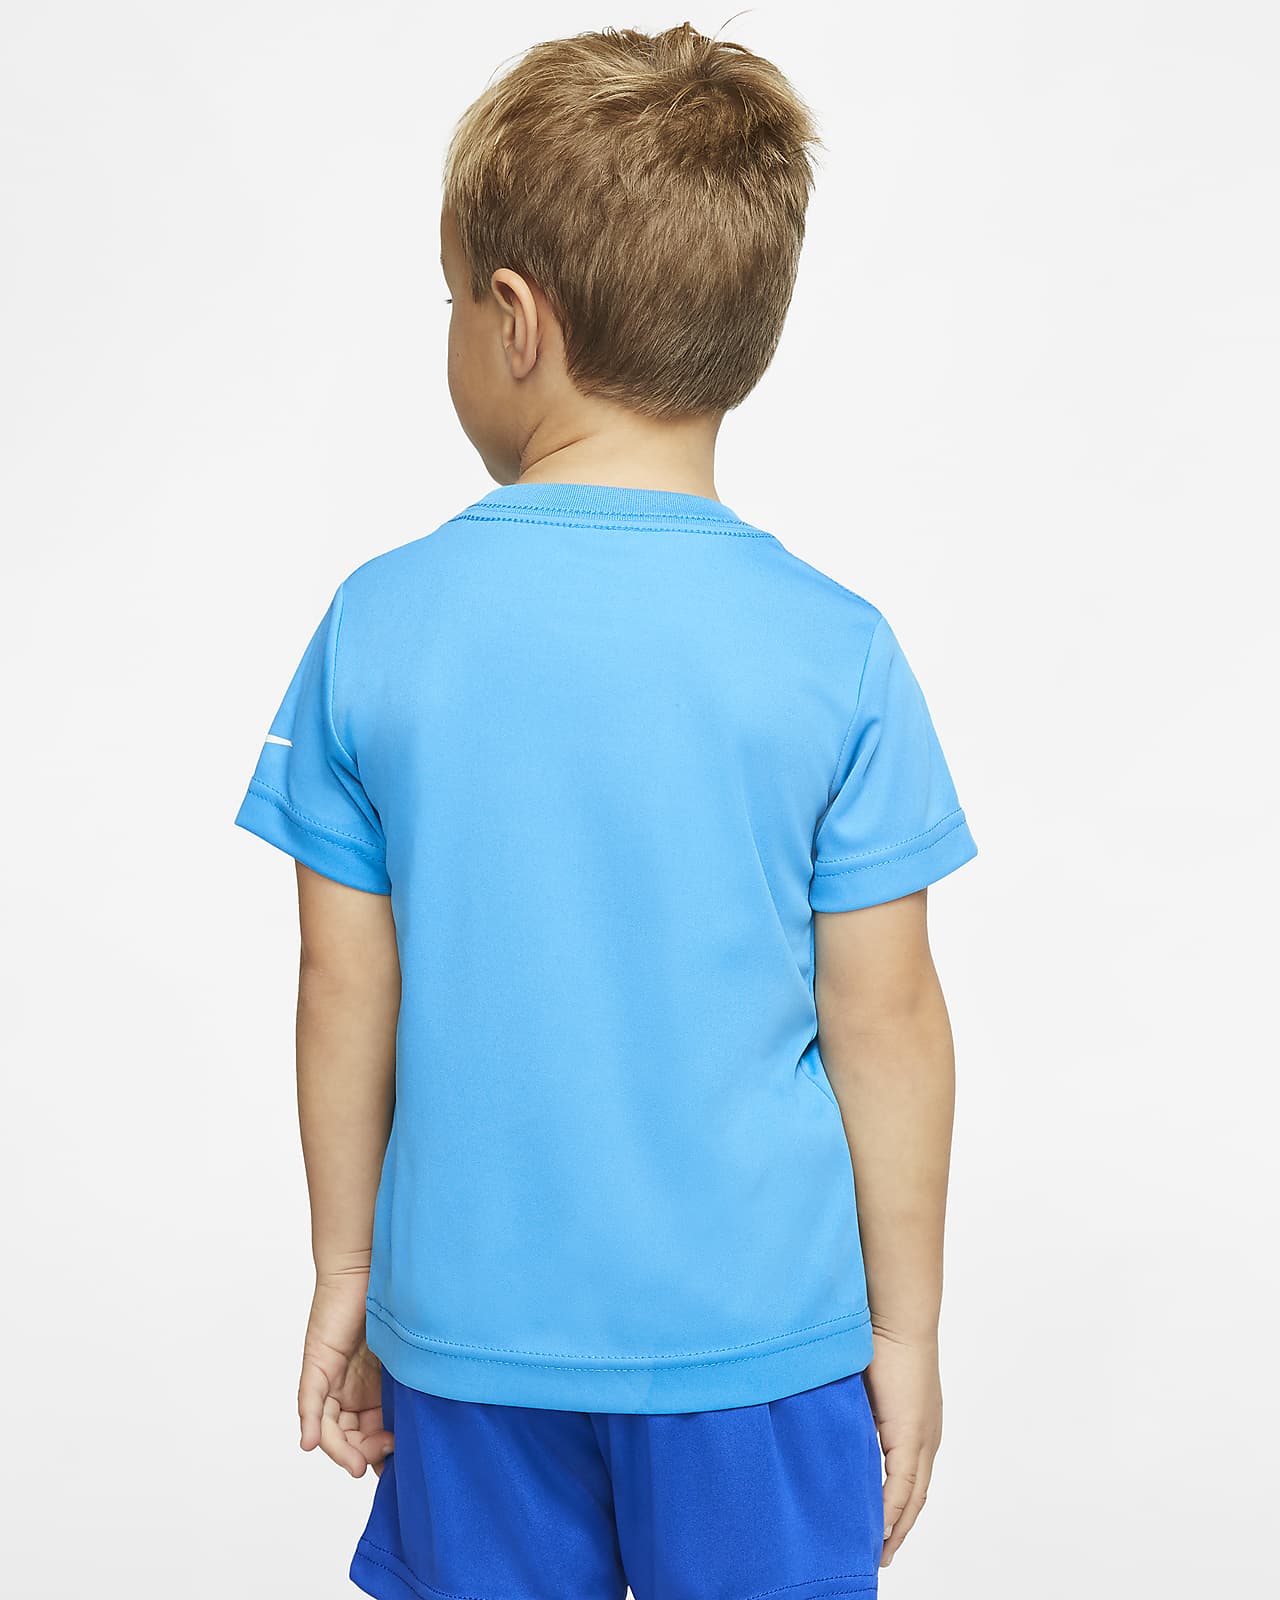 toddler dri fit shirts